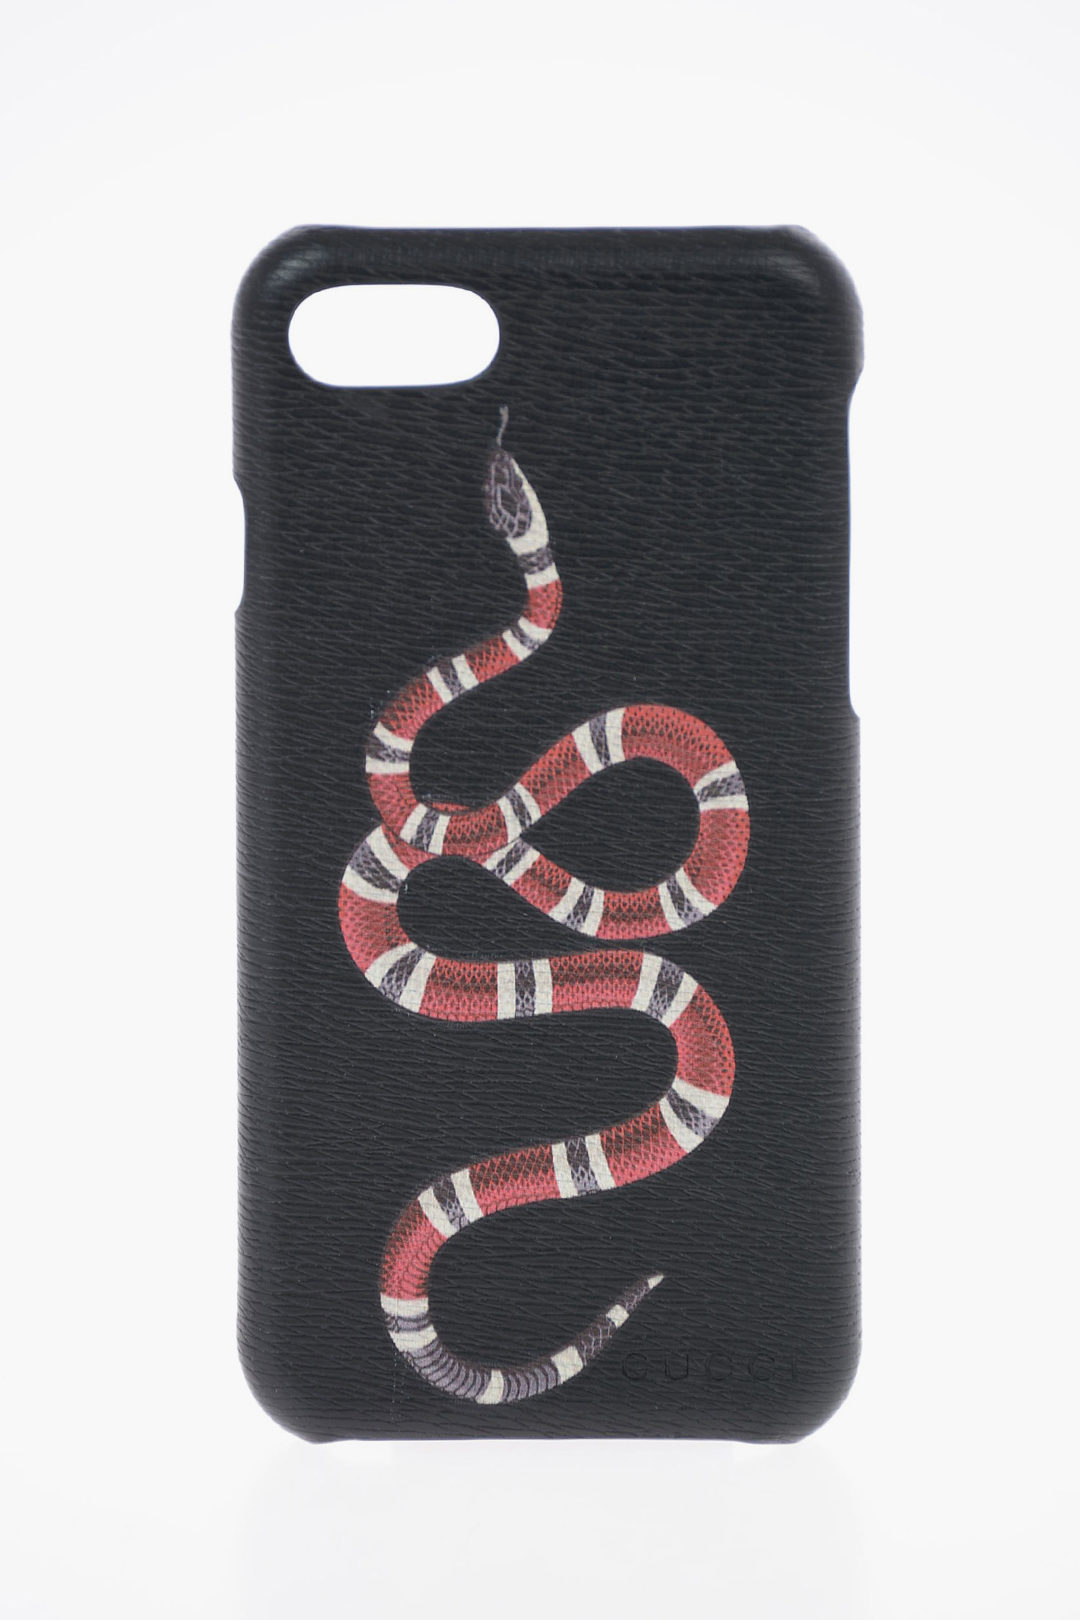 At tilpasse sig ophøre Forløber Gucci Leather Snake Printed iPhone 8 Cover unisex men women - Glamood Outlet